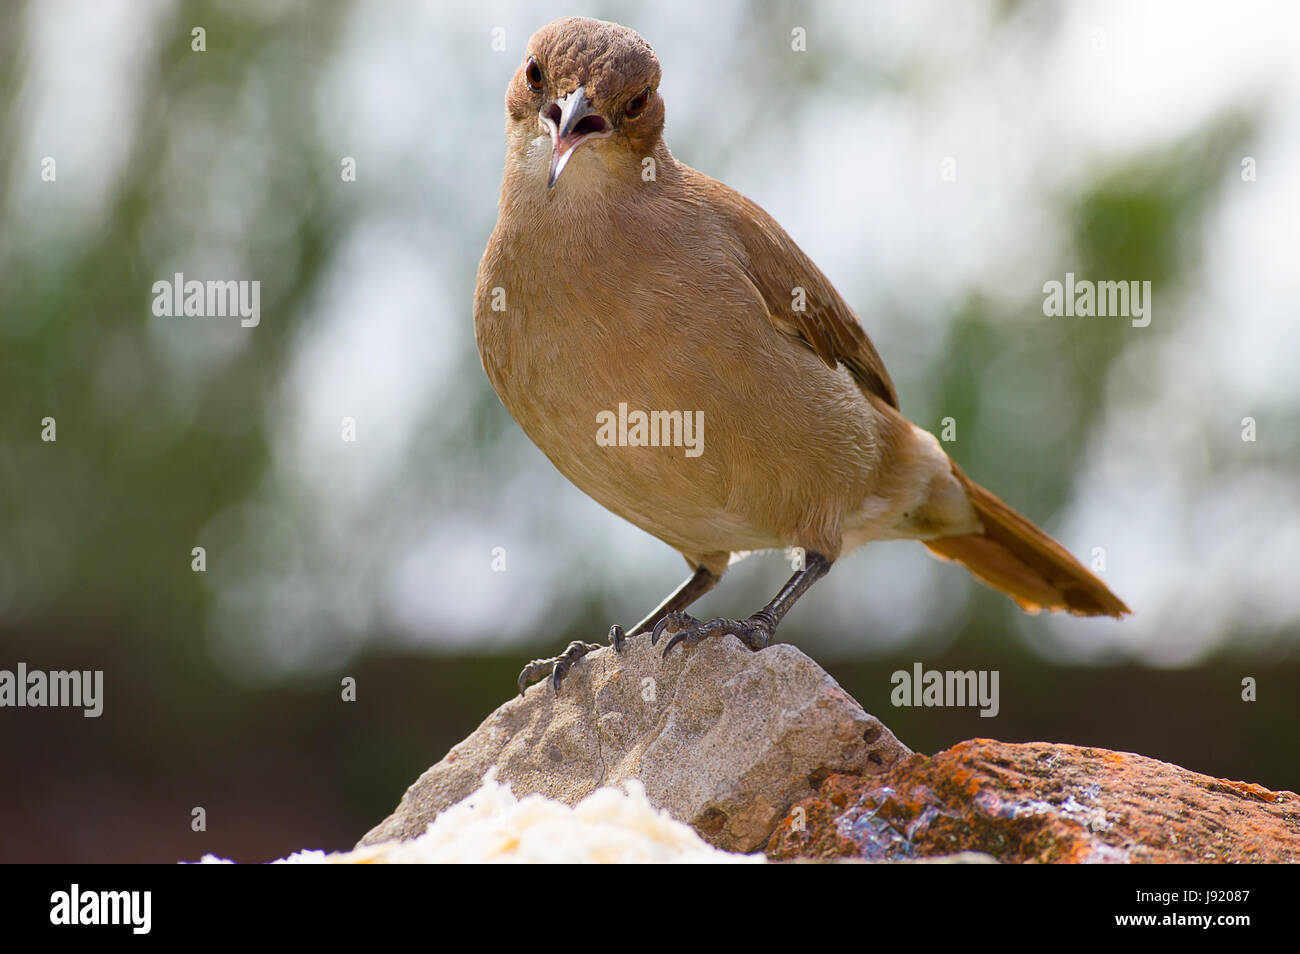 unmoving bird on the stones Stock Photo